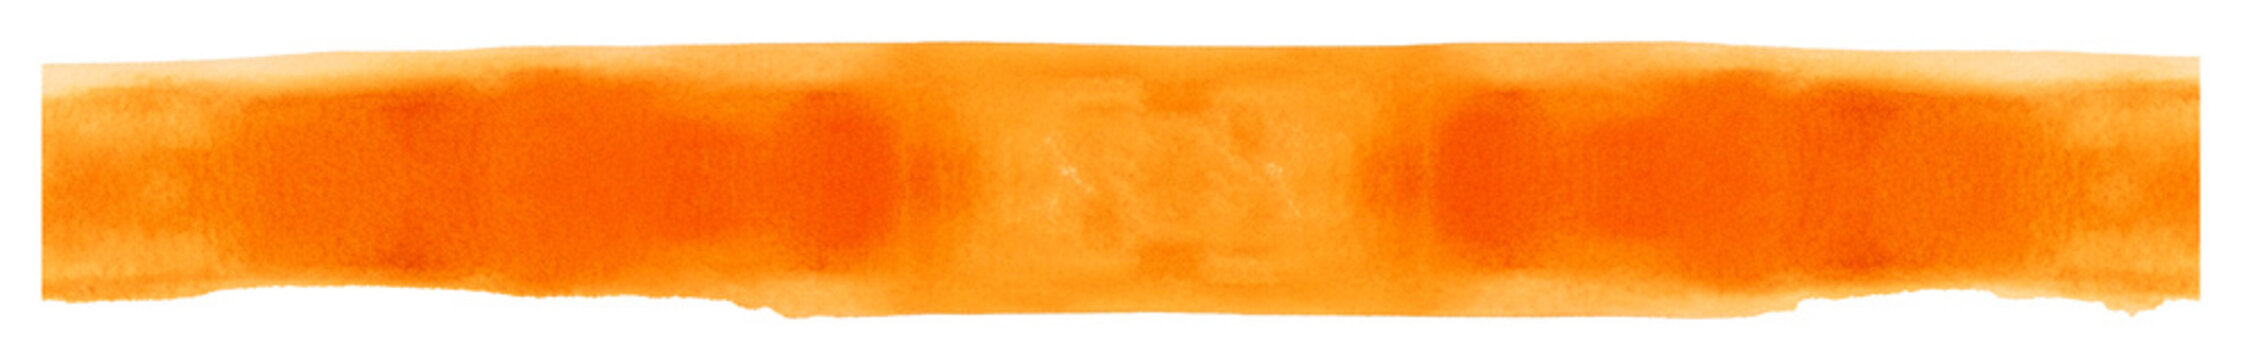 Fototapeta Pomarańczowy  pas. Farba akwarelowa. Transparentne tło.